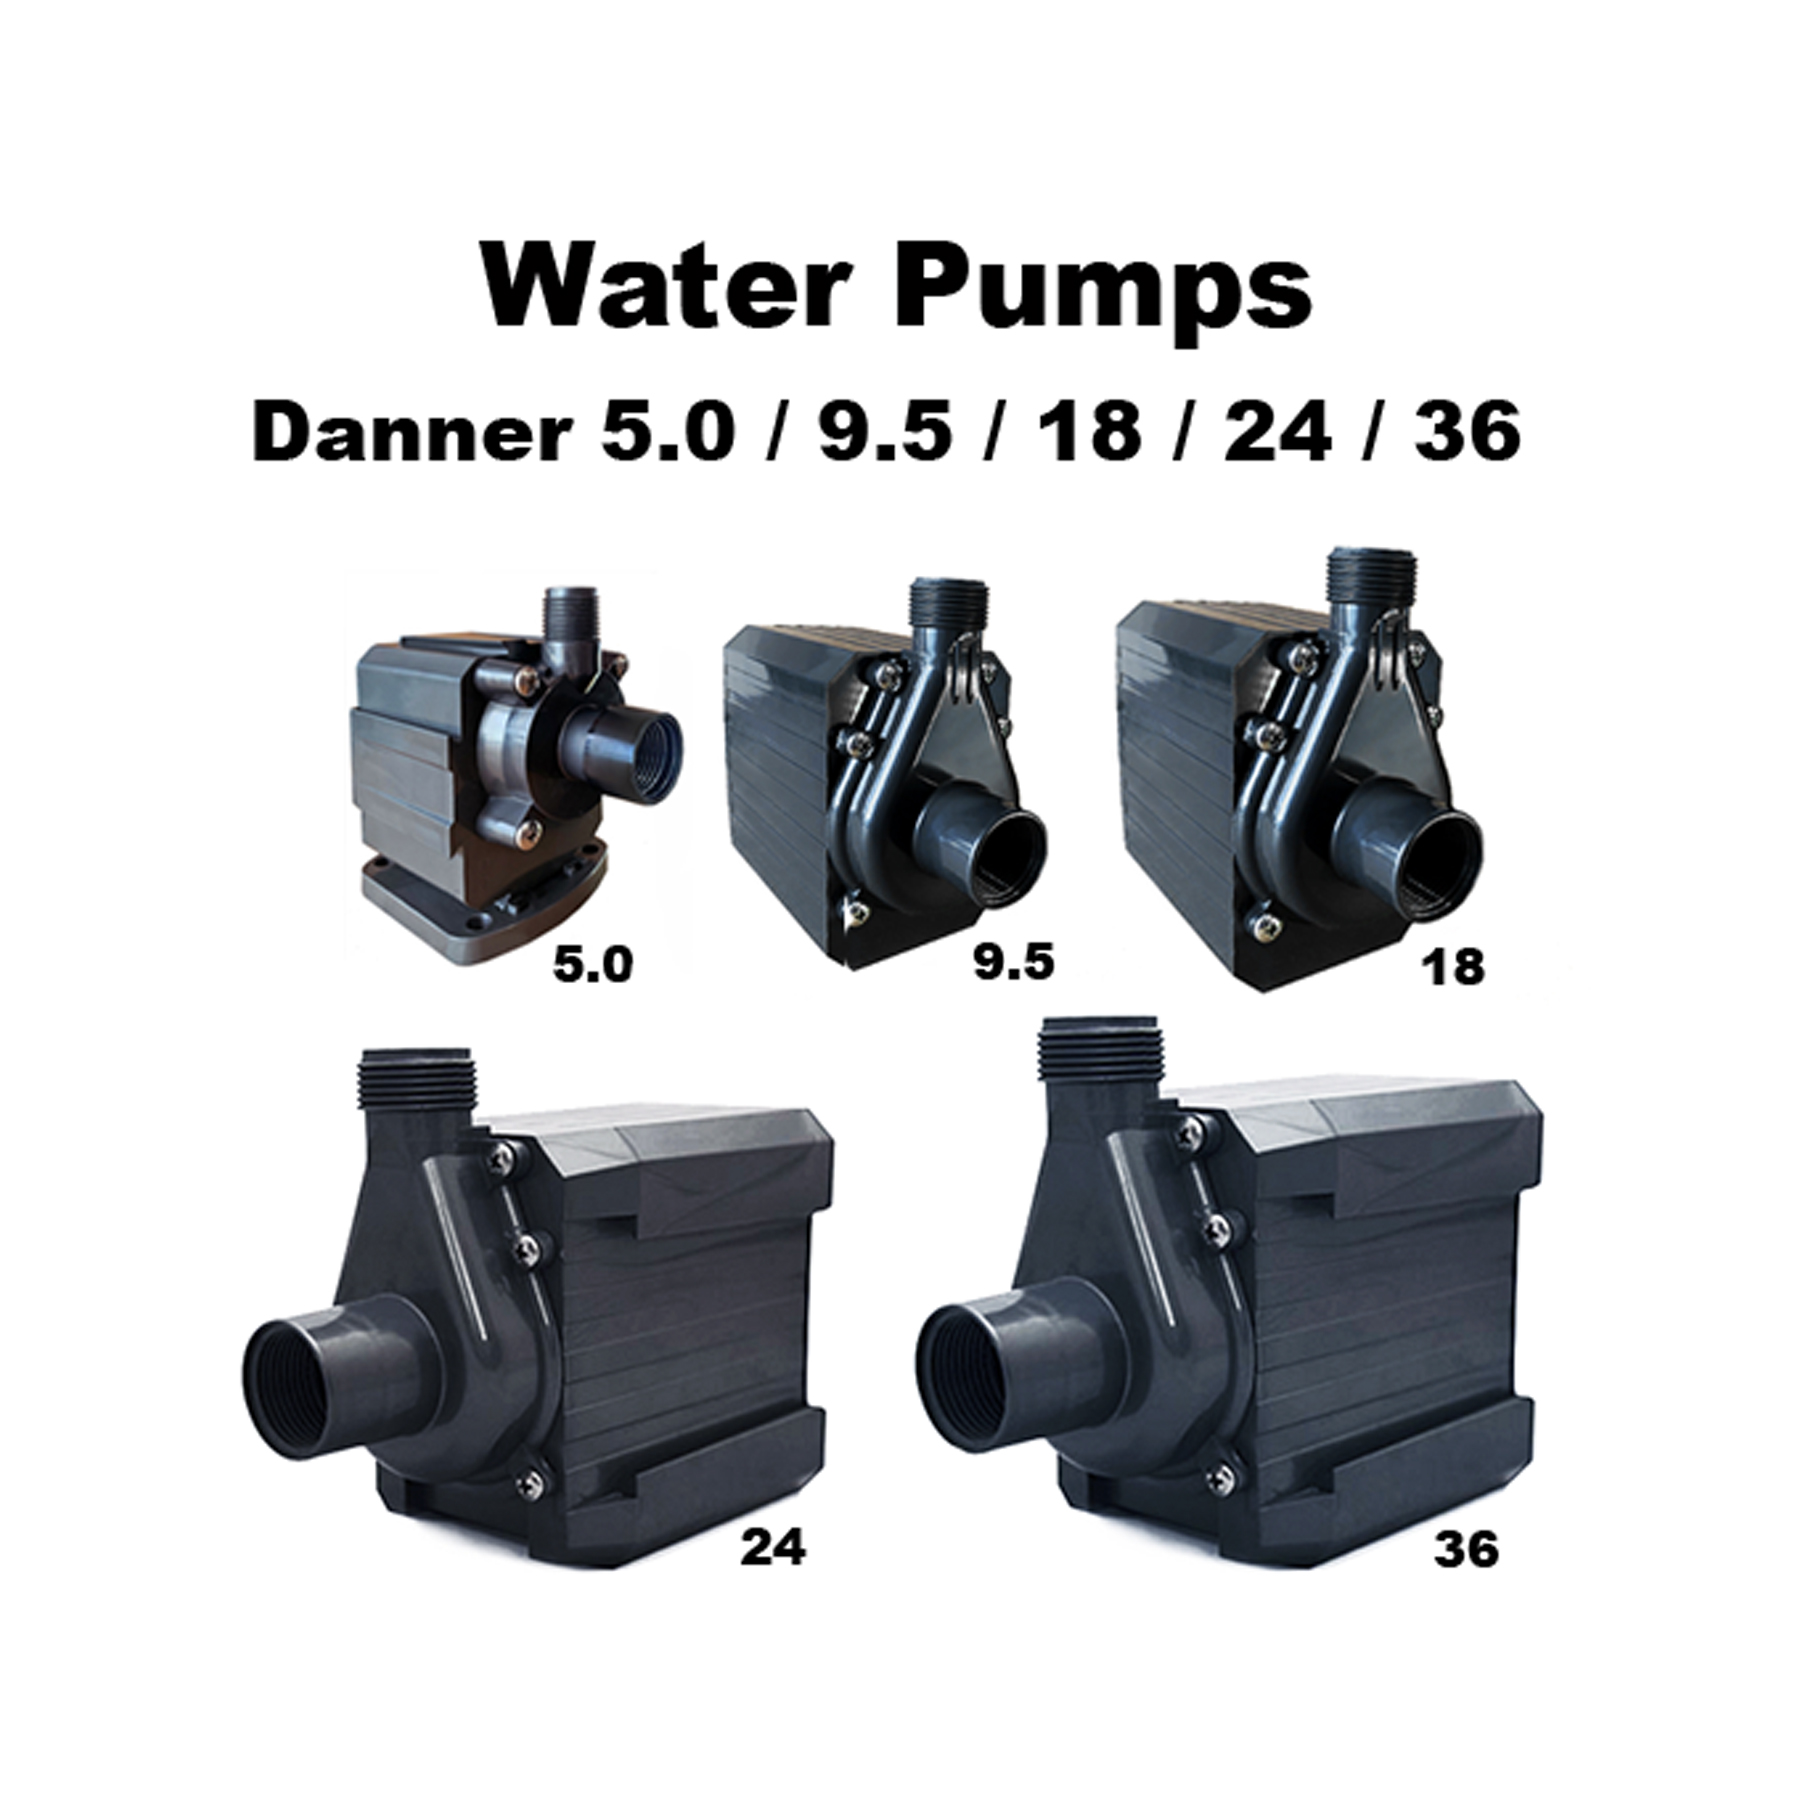 Danner 350 GPH Pool Cover Pump